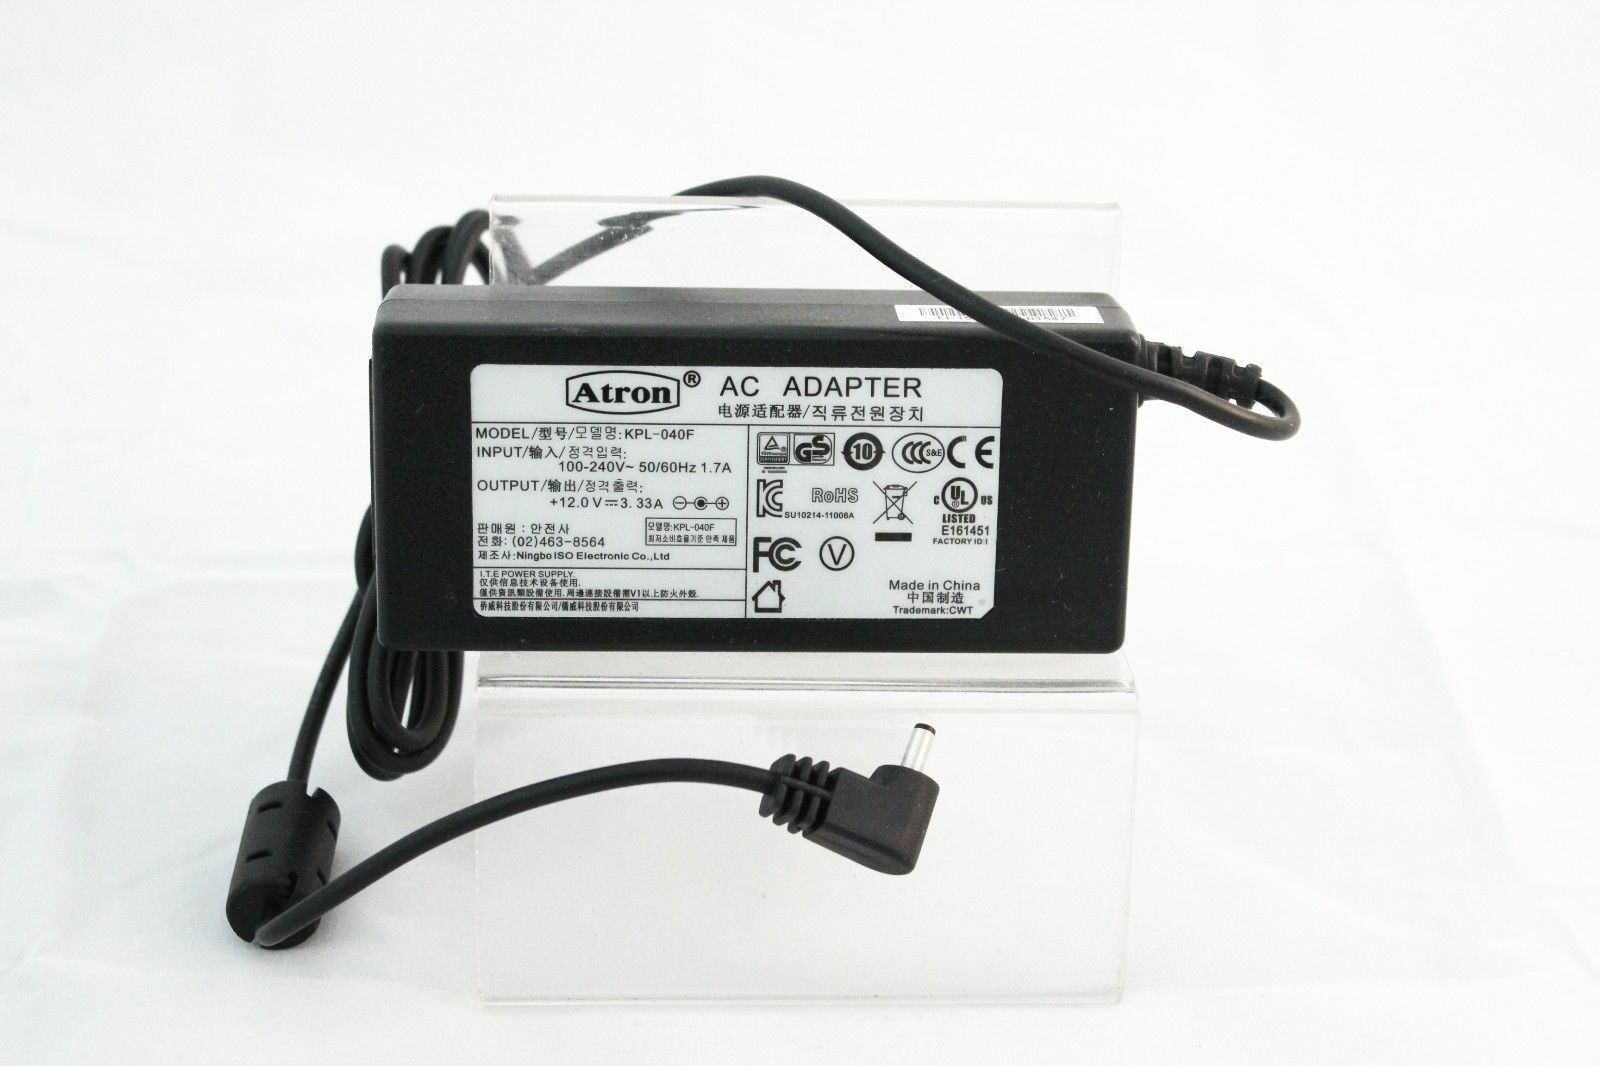 Atron AC POWER ADAPTER KPL-040F 100-240V INPUT 50/60Hz 1.7A OUTPUT +12.0V-3.33A I - Click Image to Close